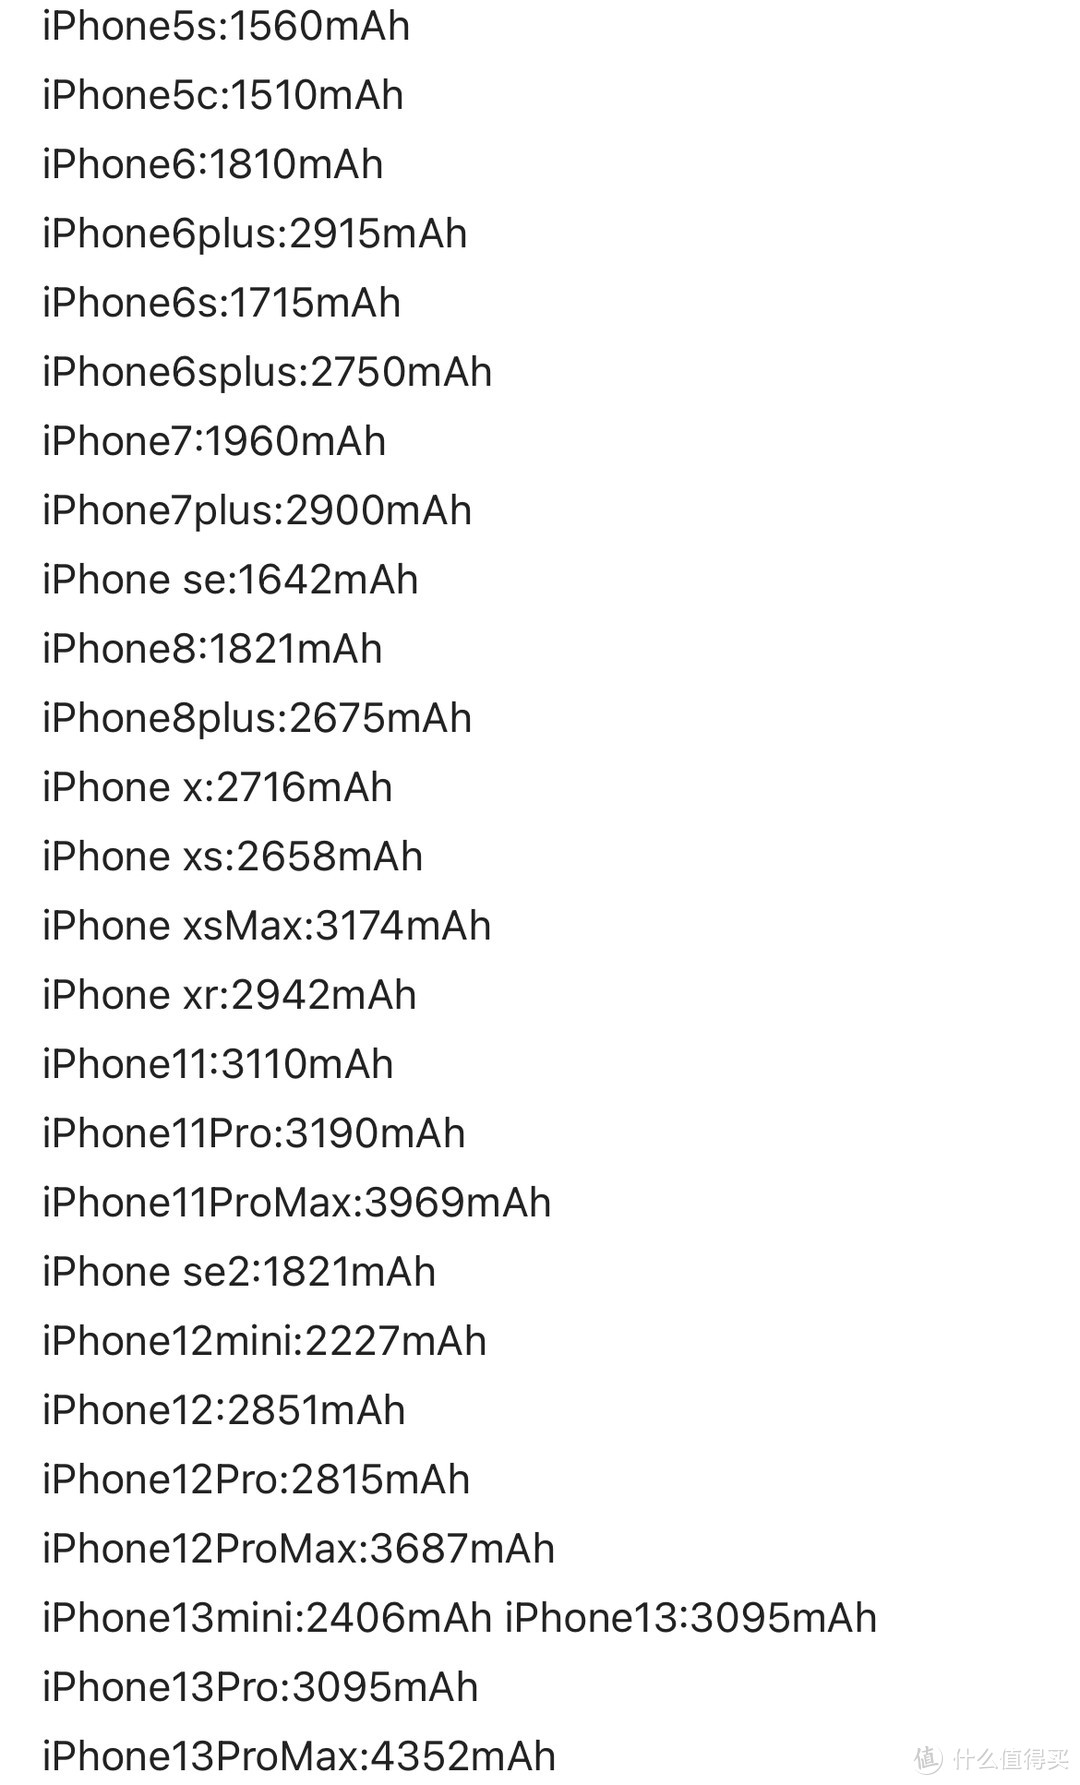 安卓旗舰已经普及120W快充，为什么苹果还是坚持使用20W慢充？